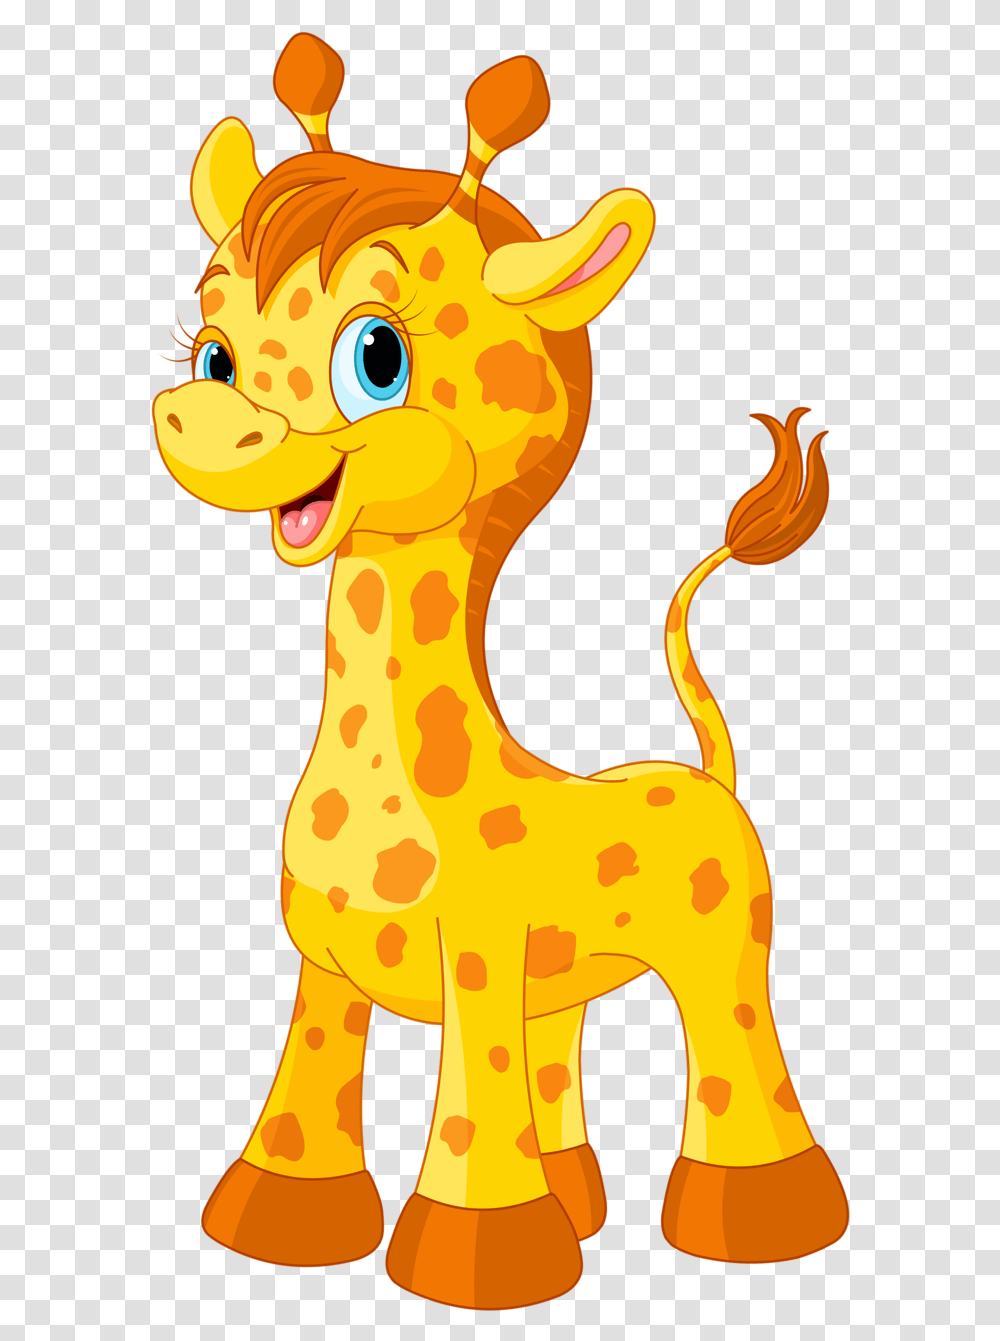 Giraffe Clipart Cute, Animal, Mammal, Pet, Bird Transparent Png